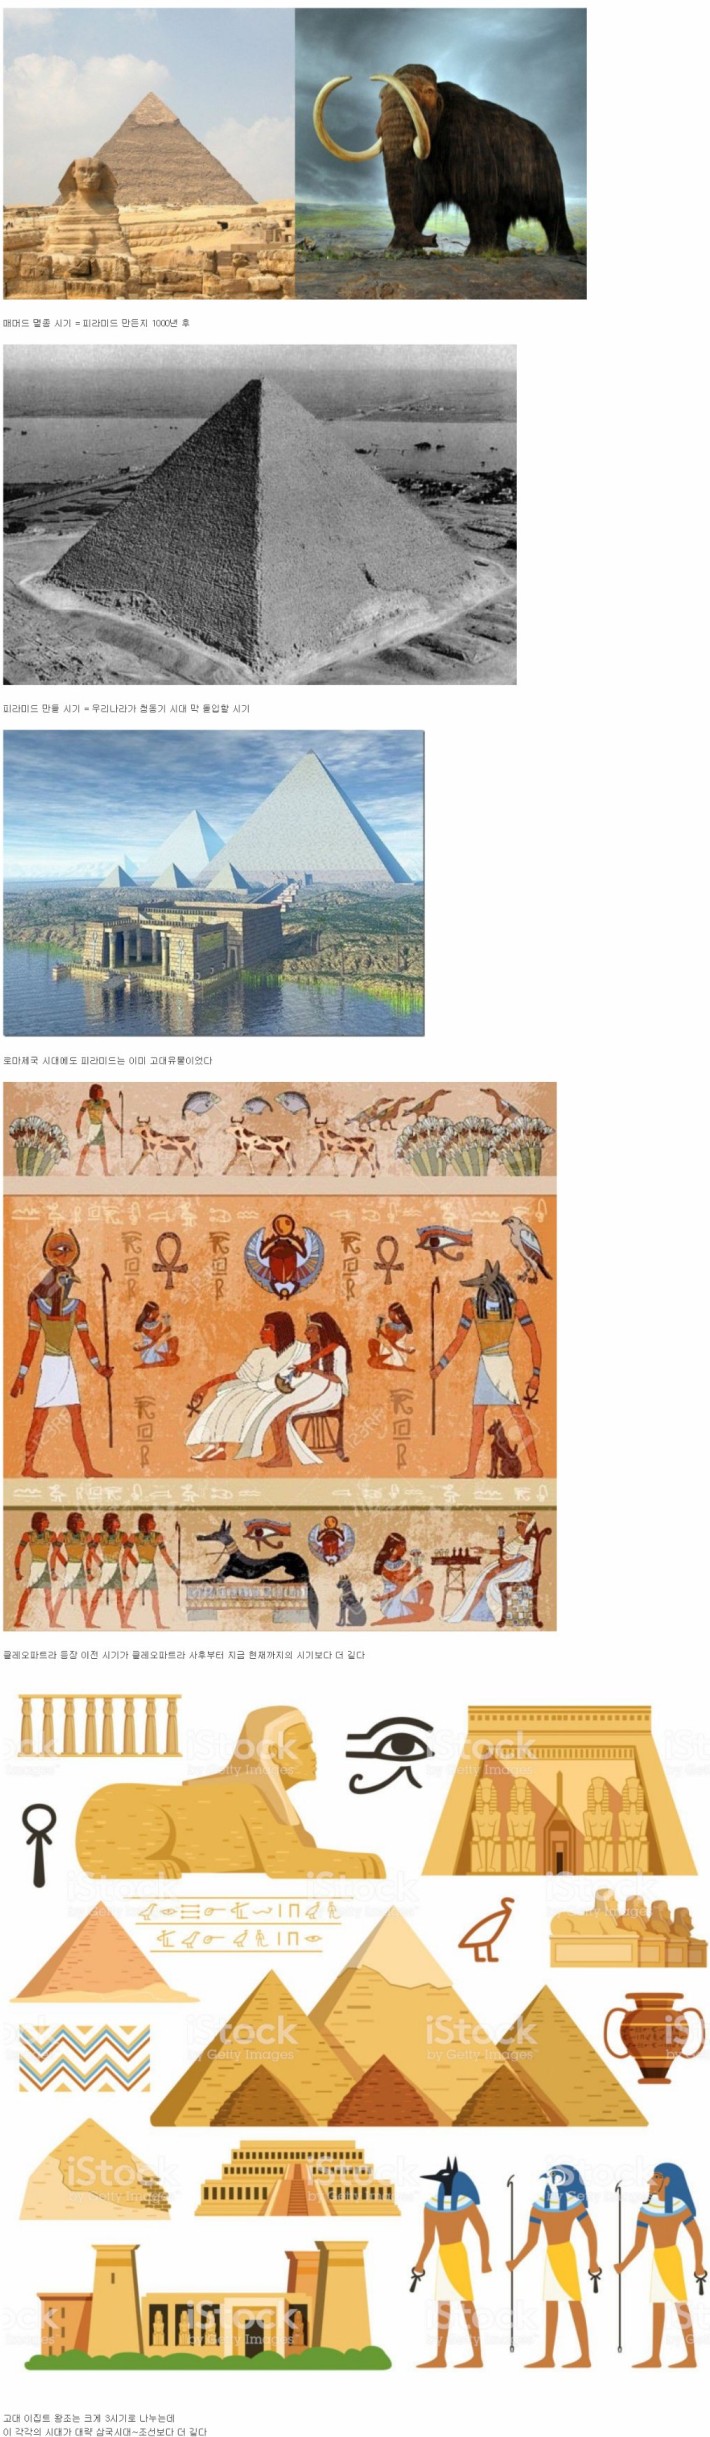 ㅎㄷㄷ한 이집트 역사